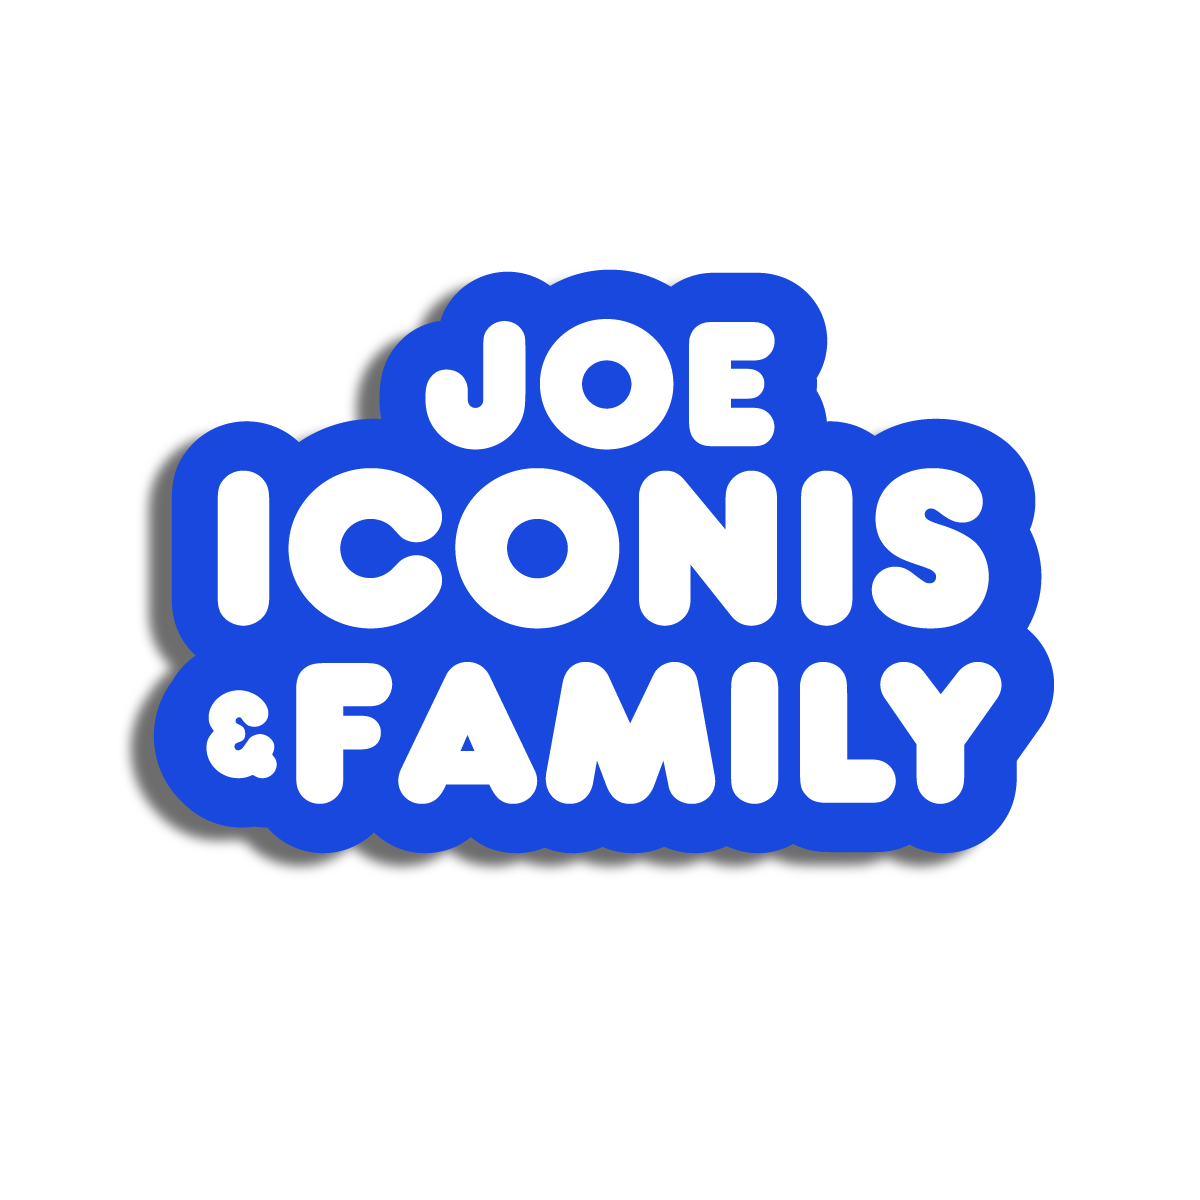 Joe Iconis | Joe Iconis & Family Sticker